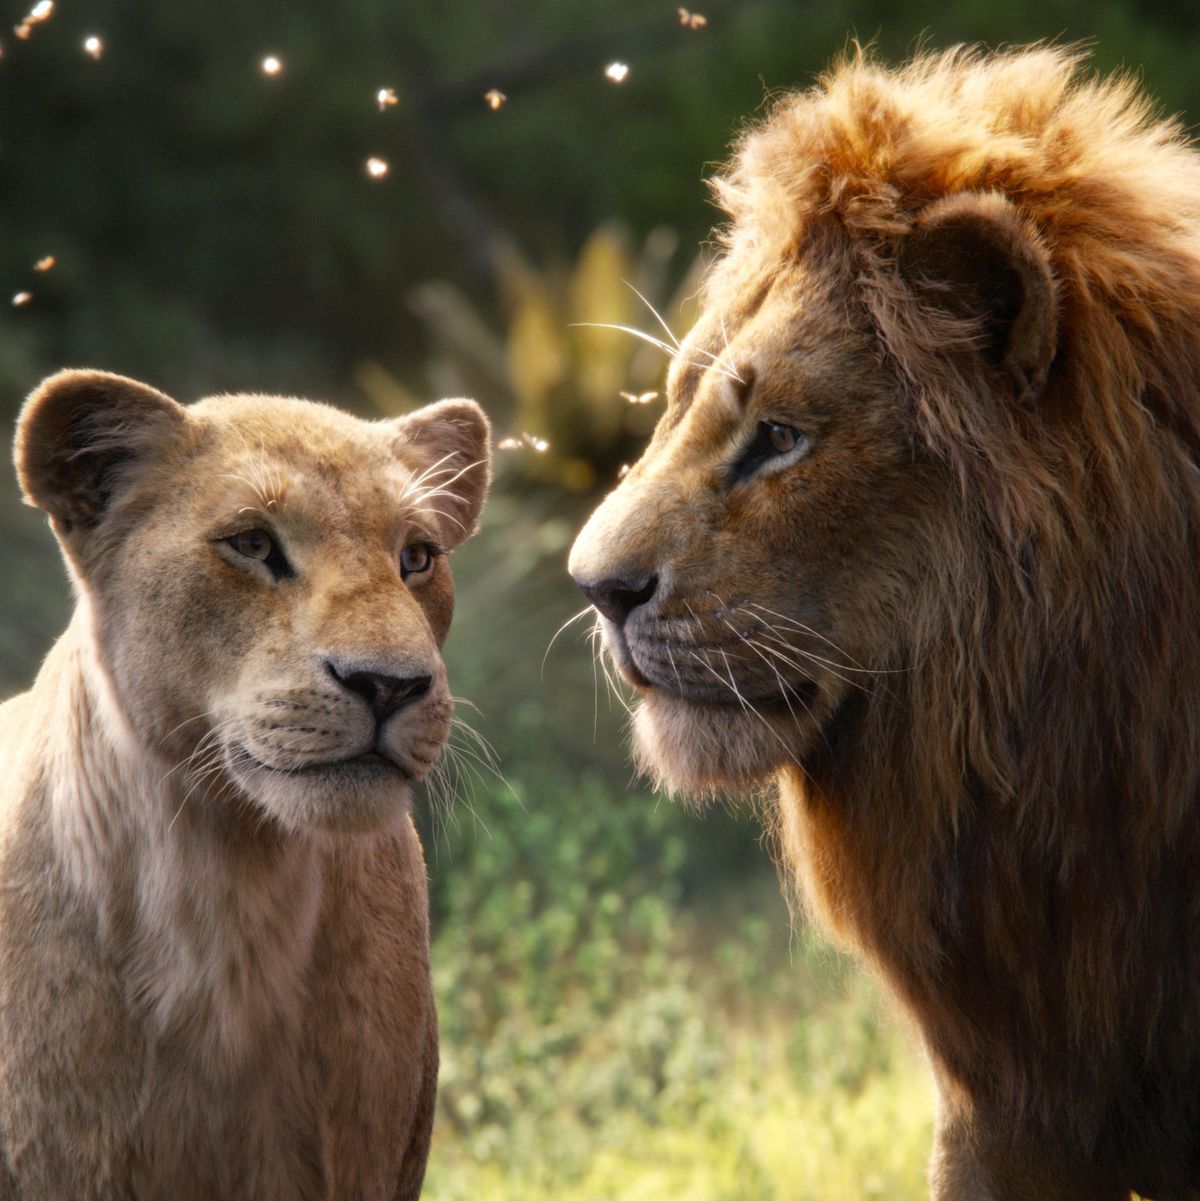 Image result for lion king